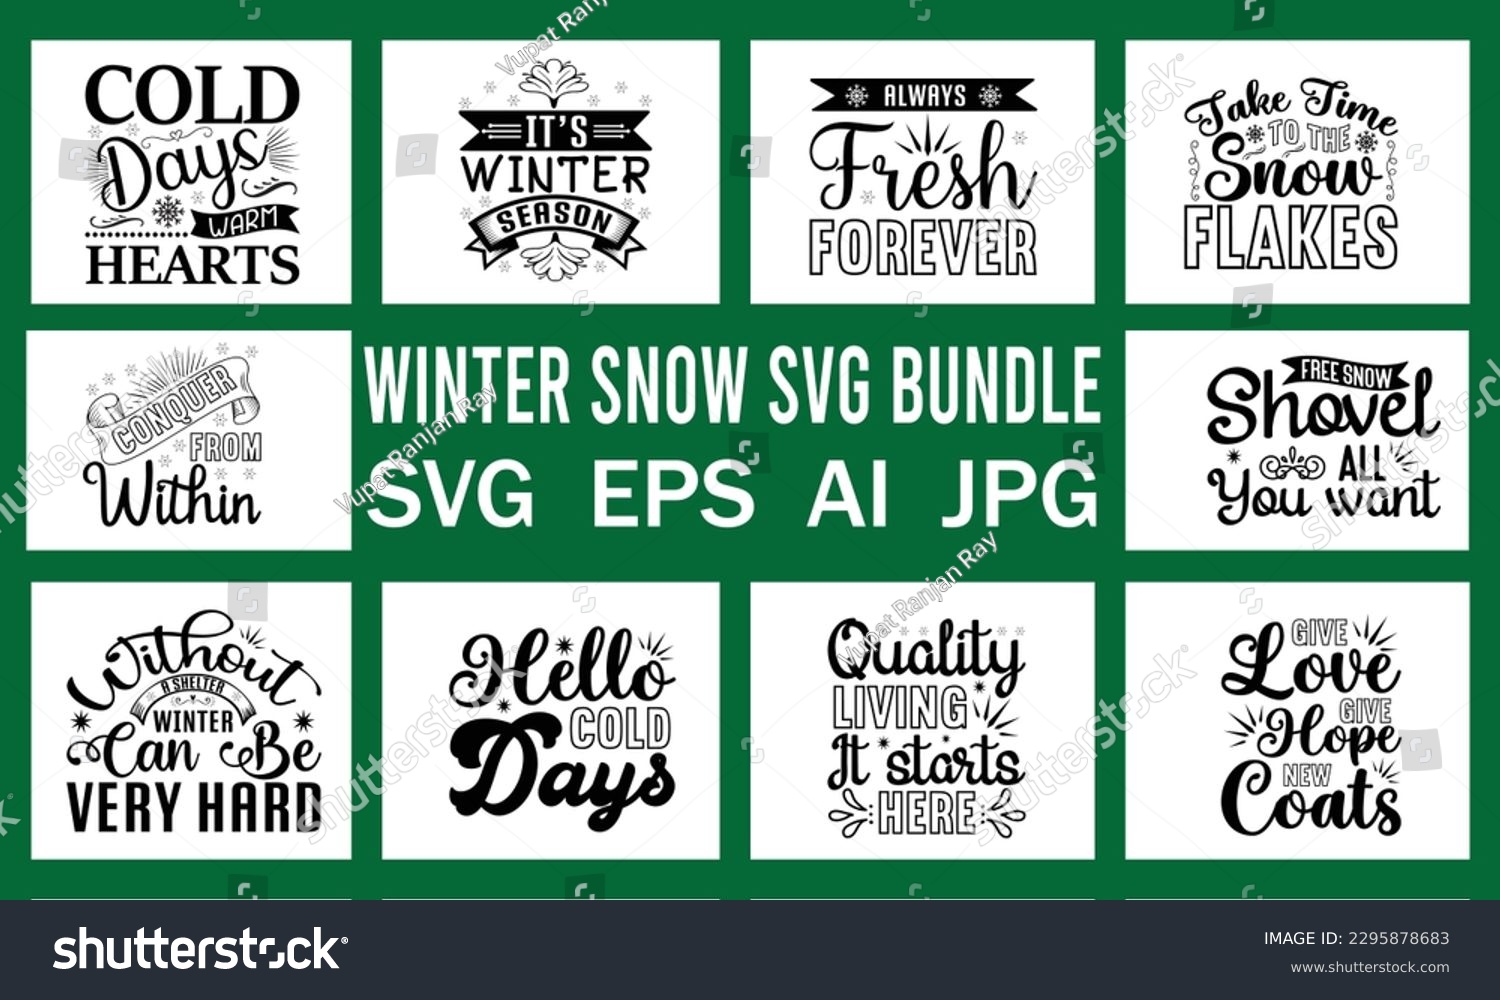 SVG of Winter Snow Svg  Free File Vector  Bundle svg